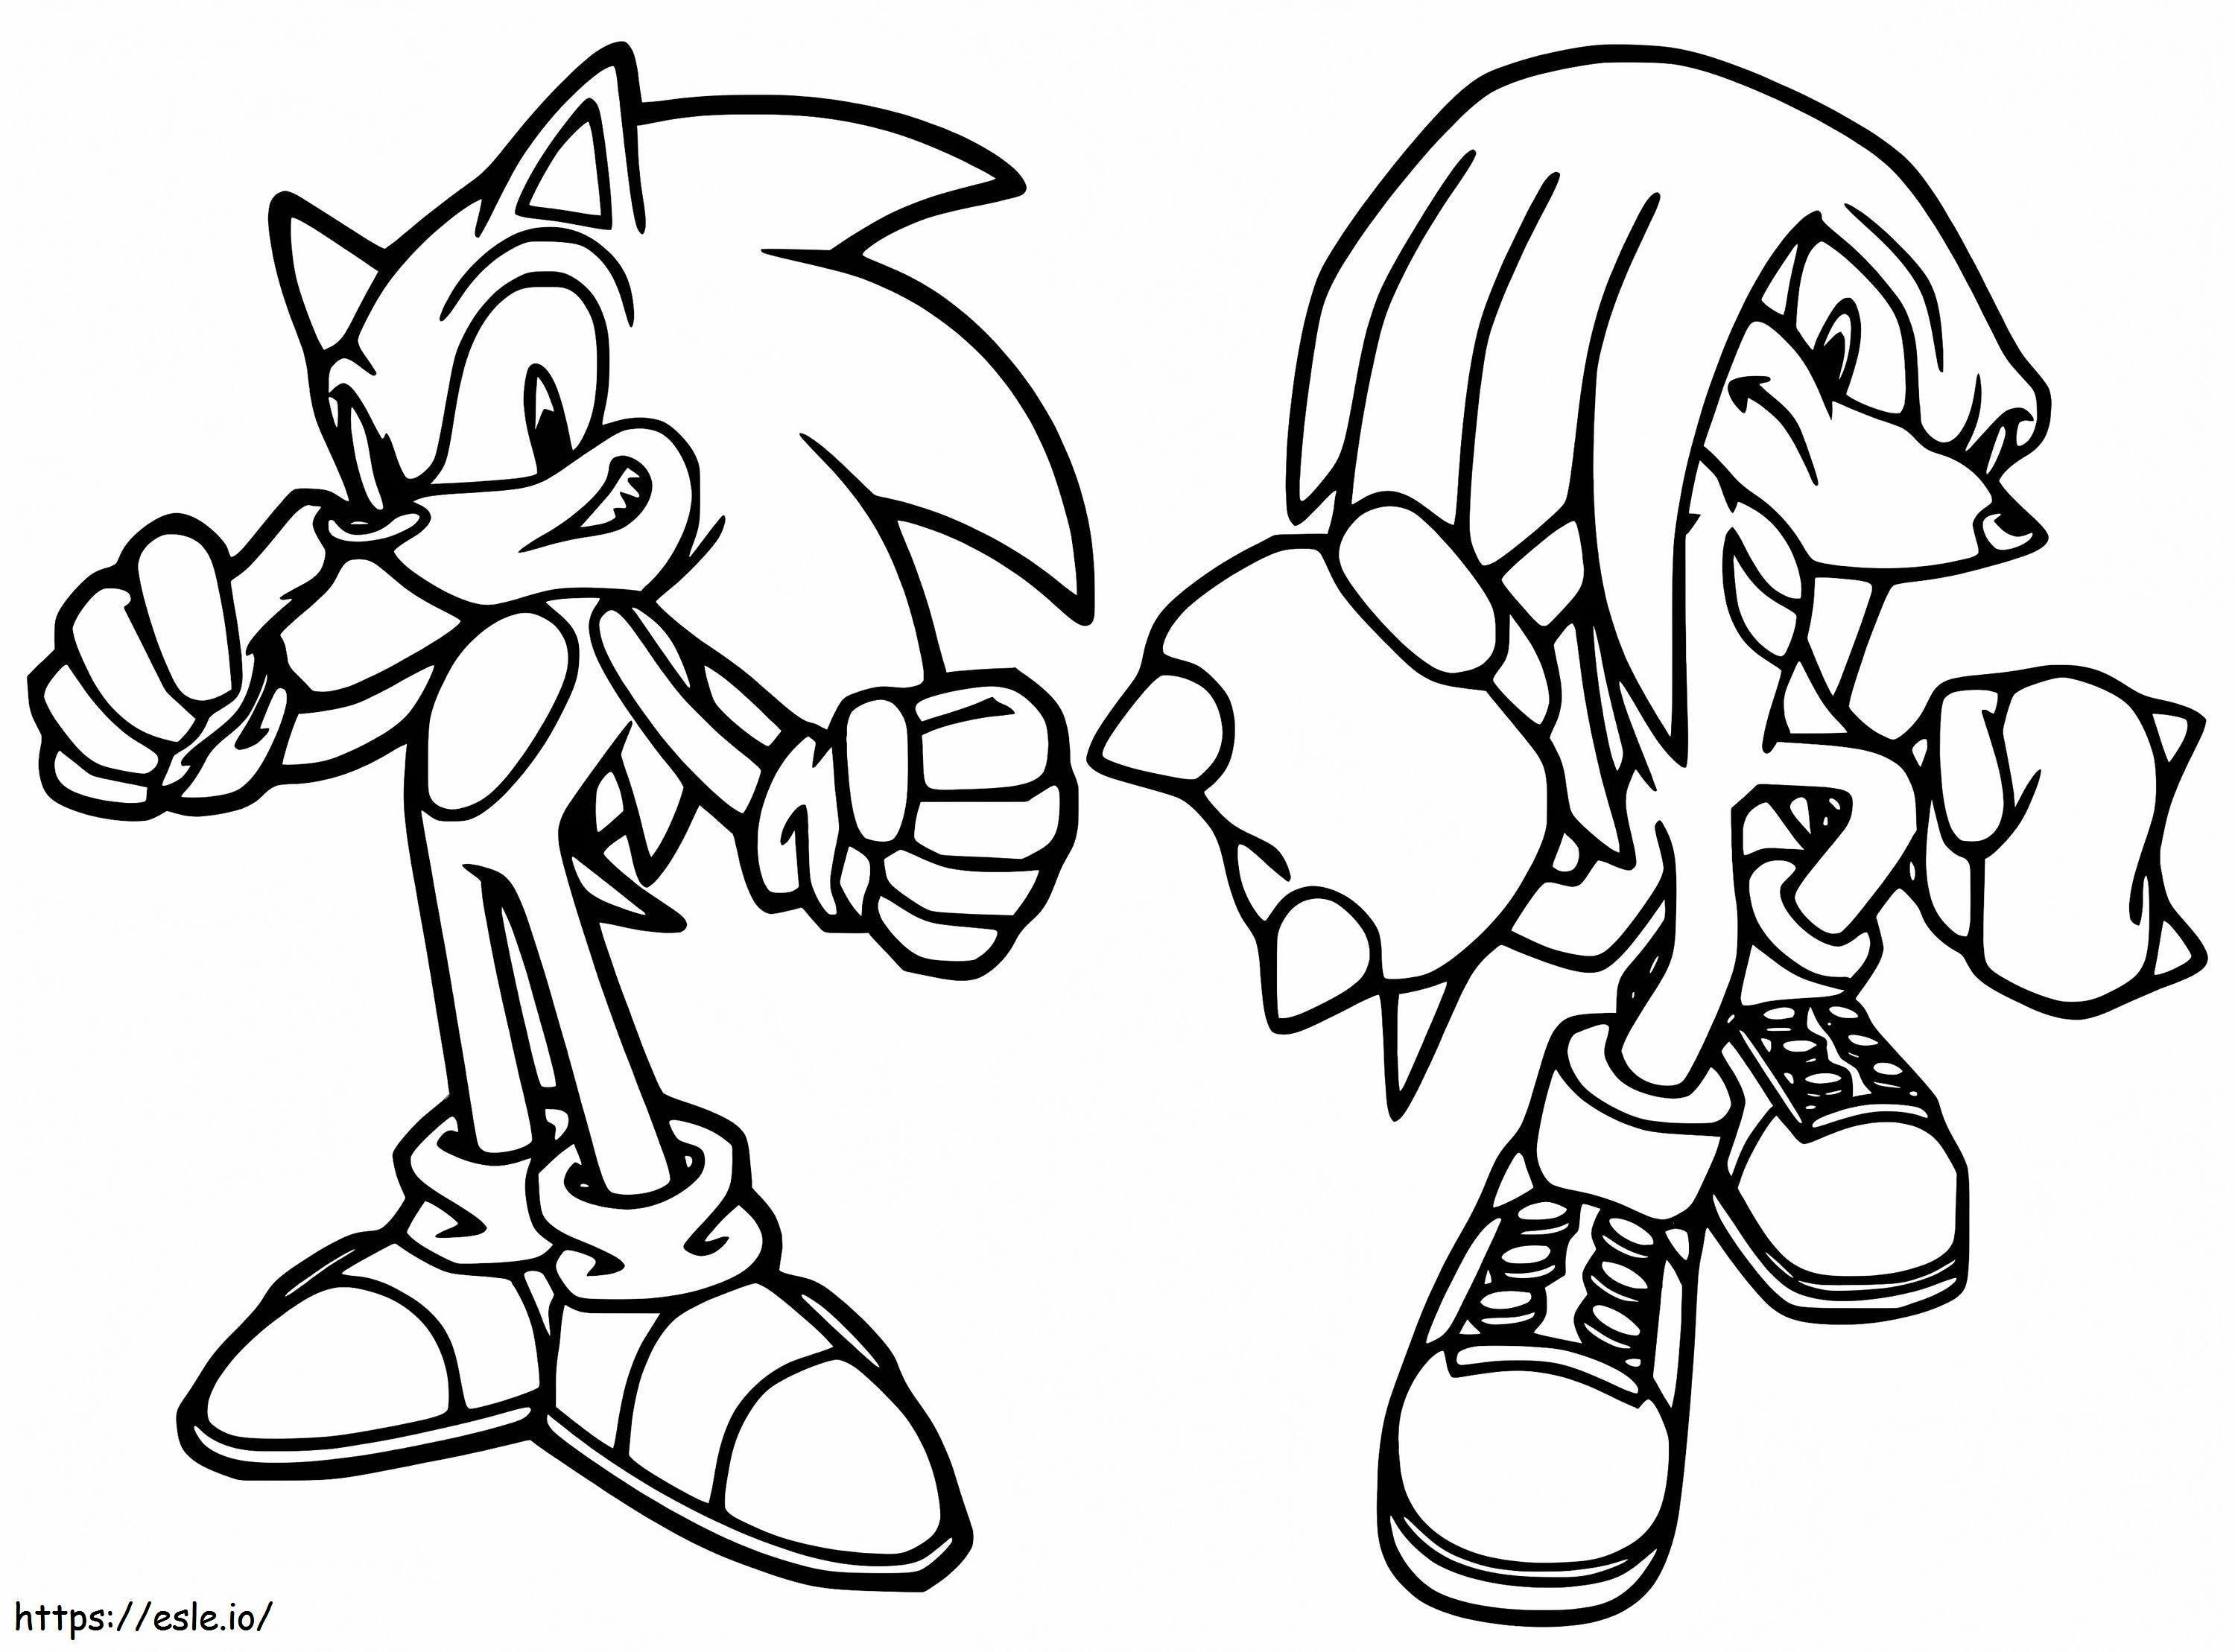 Sonic și Knuckles de colorat